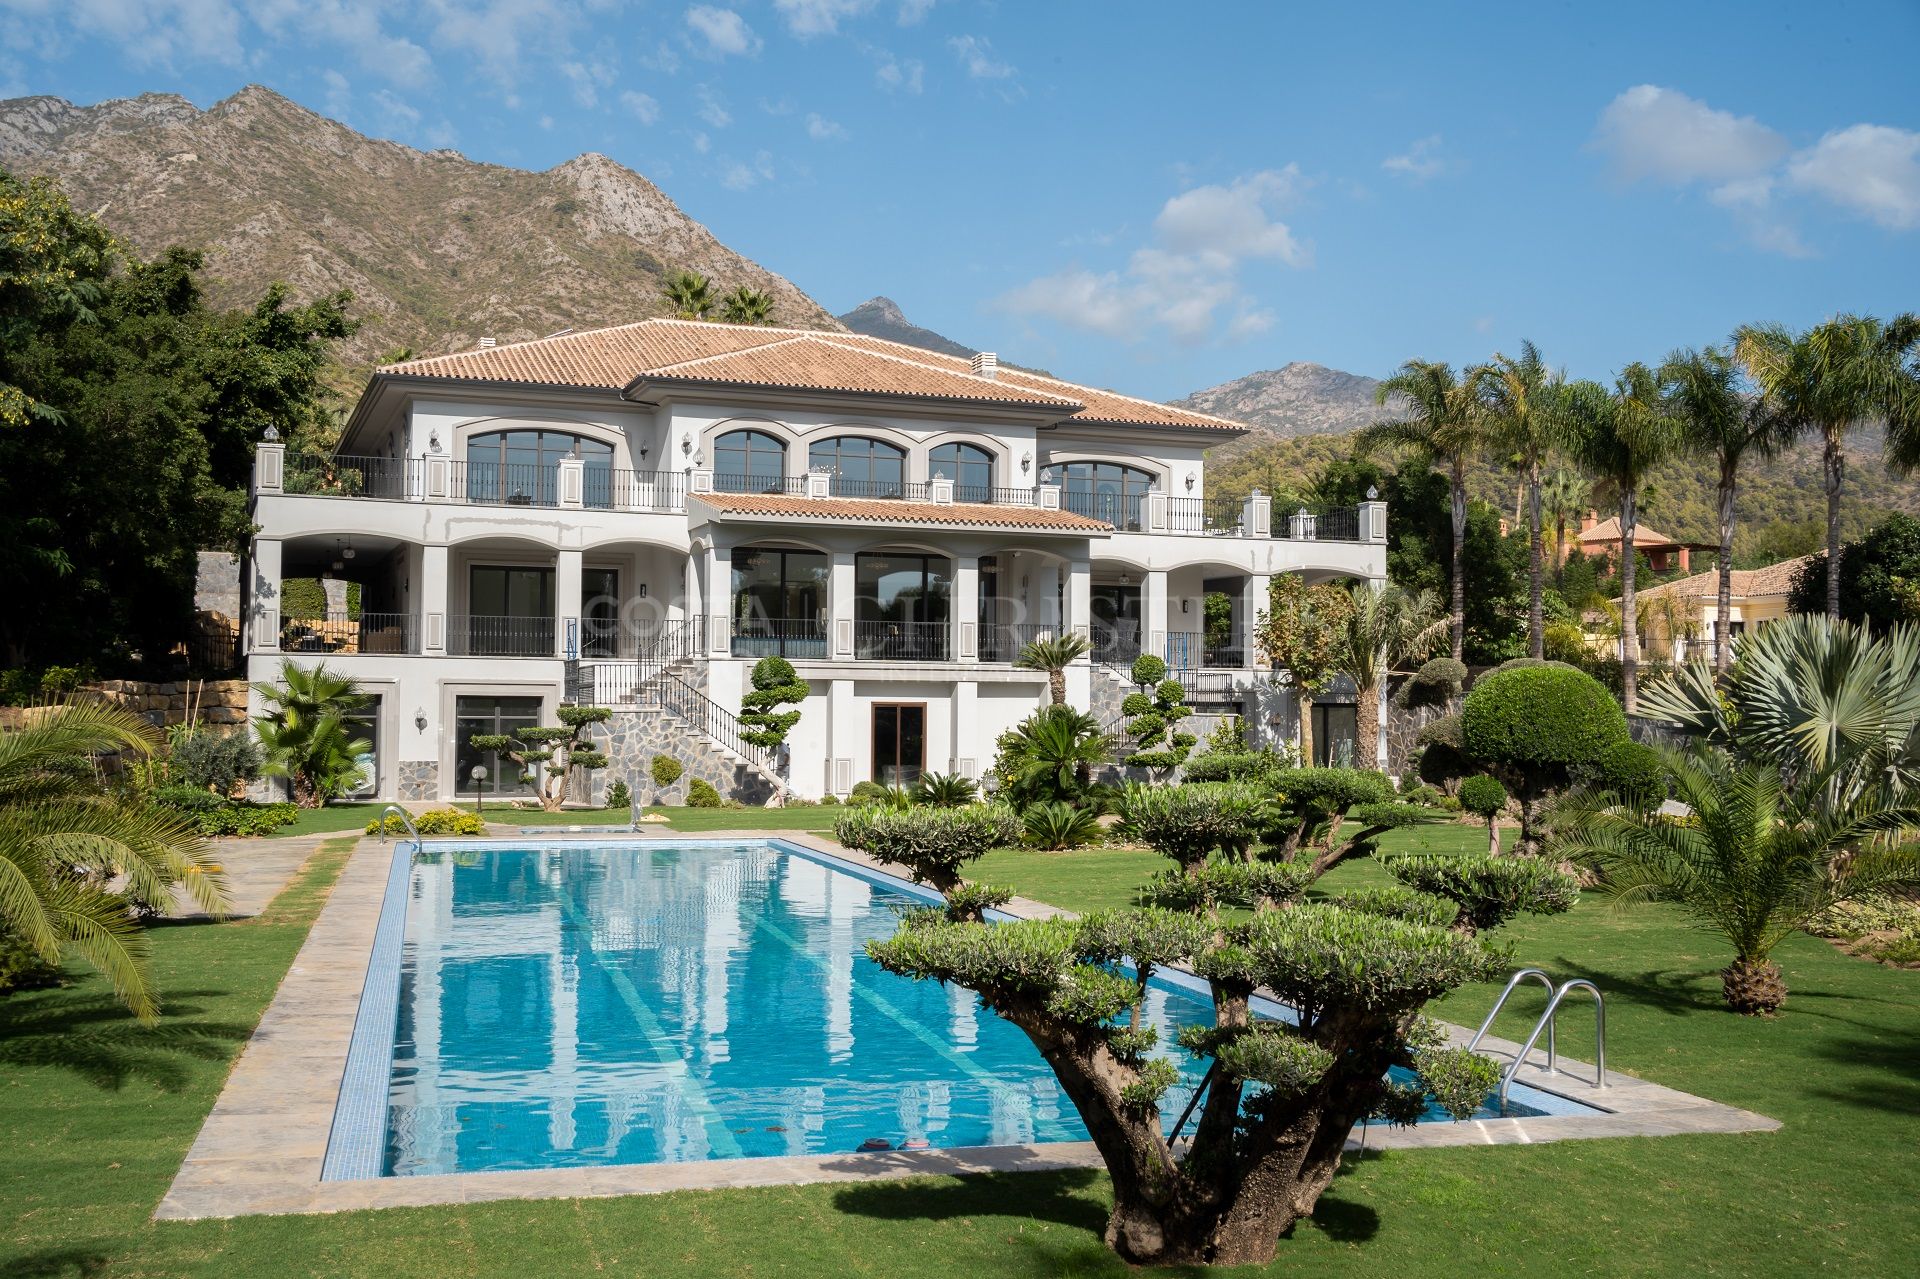 ESPECTACULAR VILLA SERENITY EN SIERRA BLANCA, MILLA DE ORO DE MARBELLA | Christie’s International Real Estate